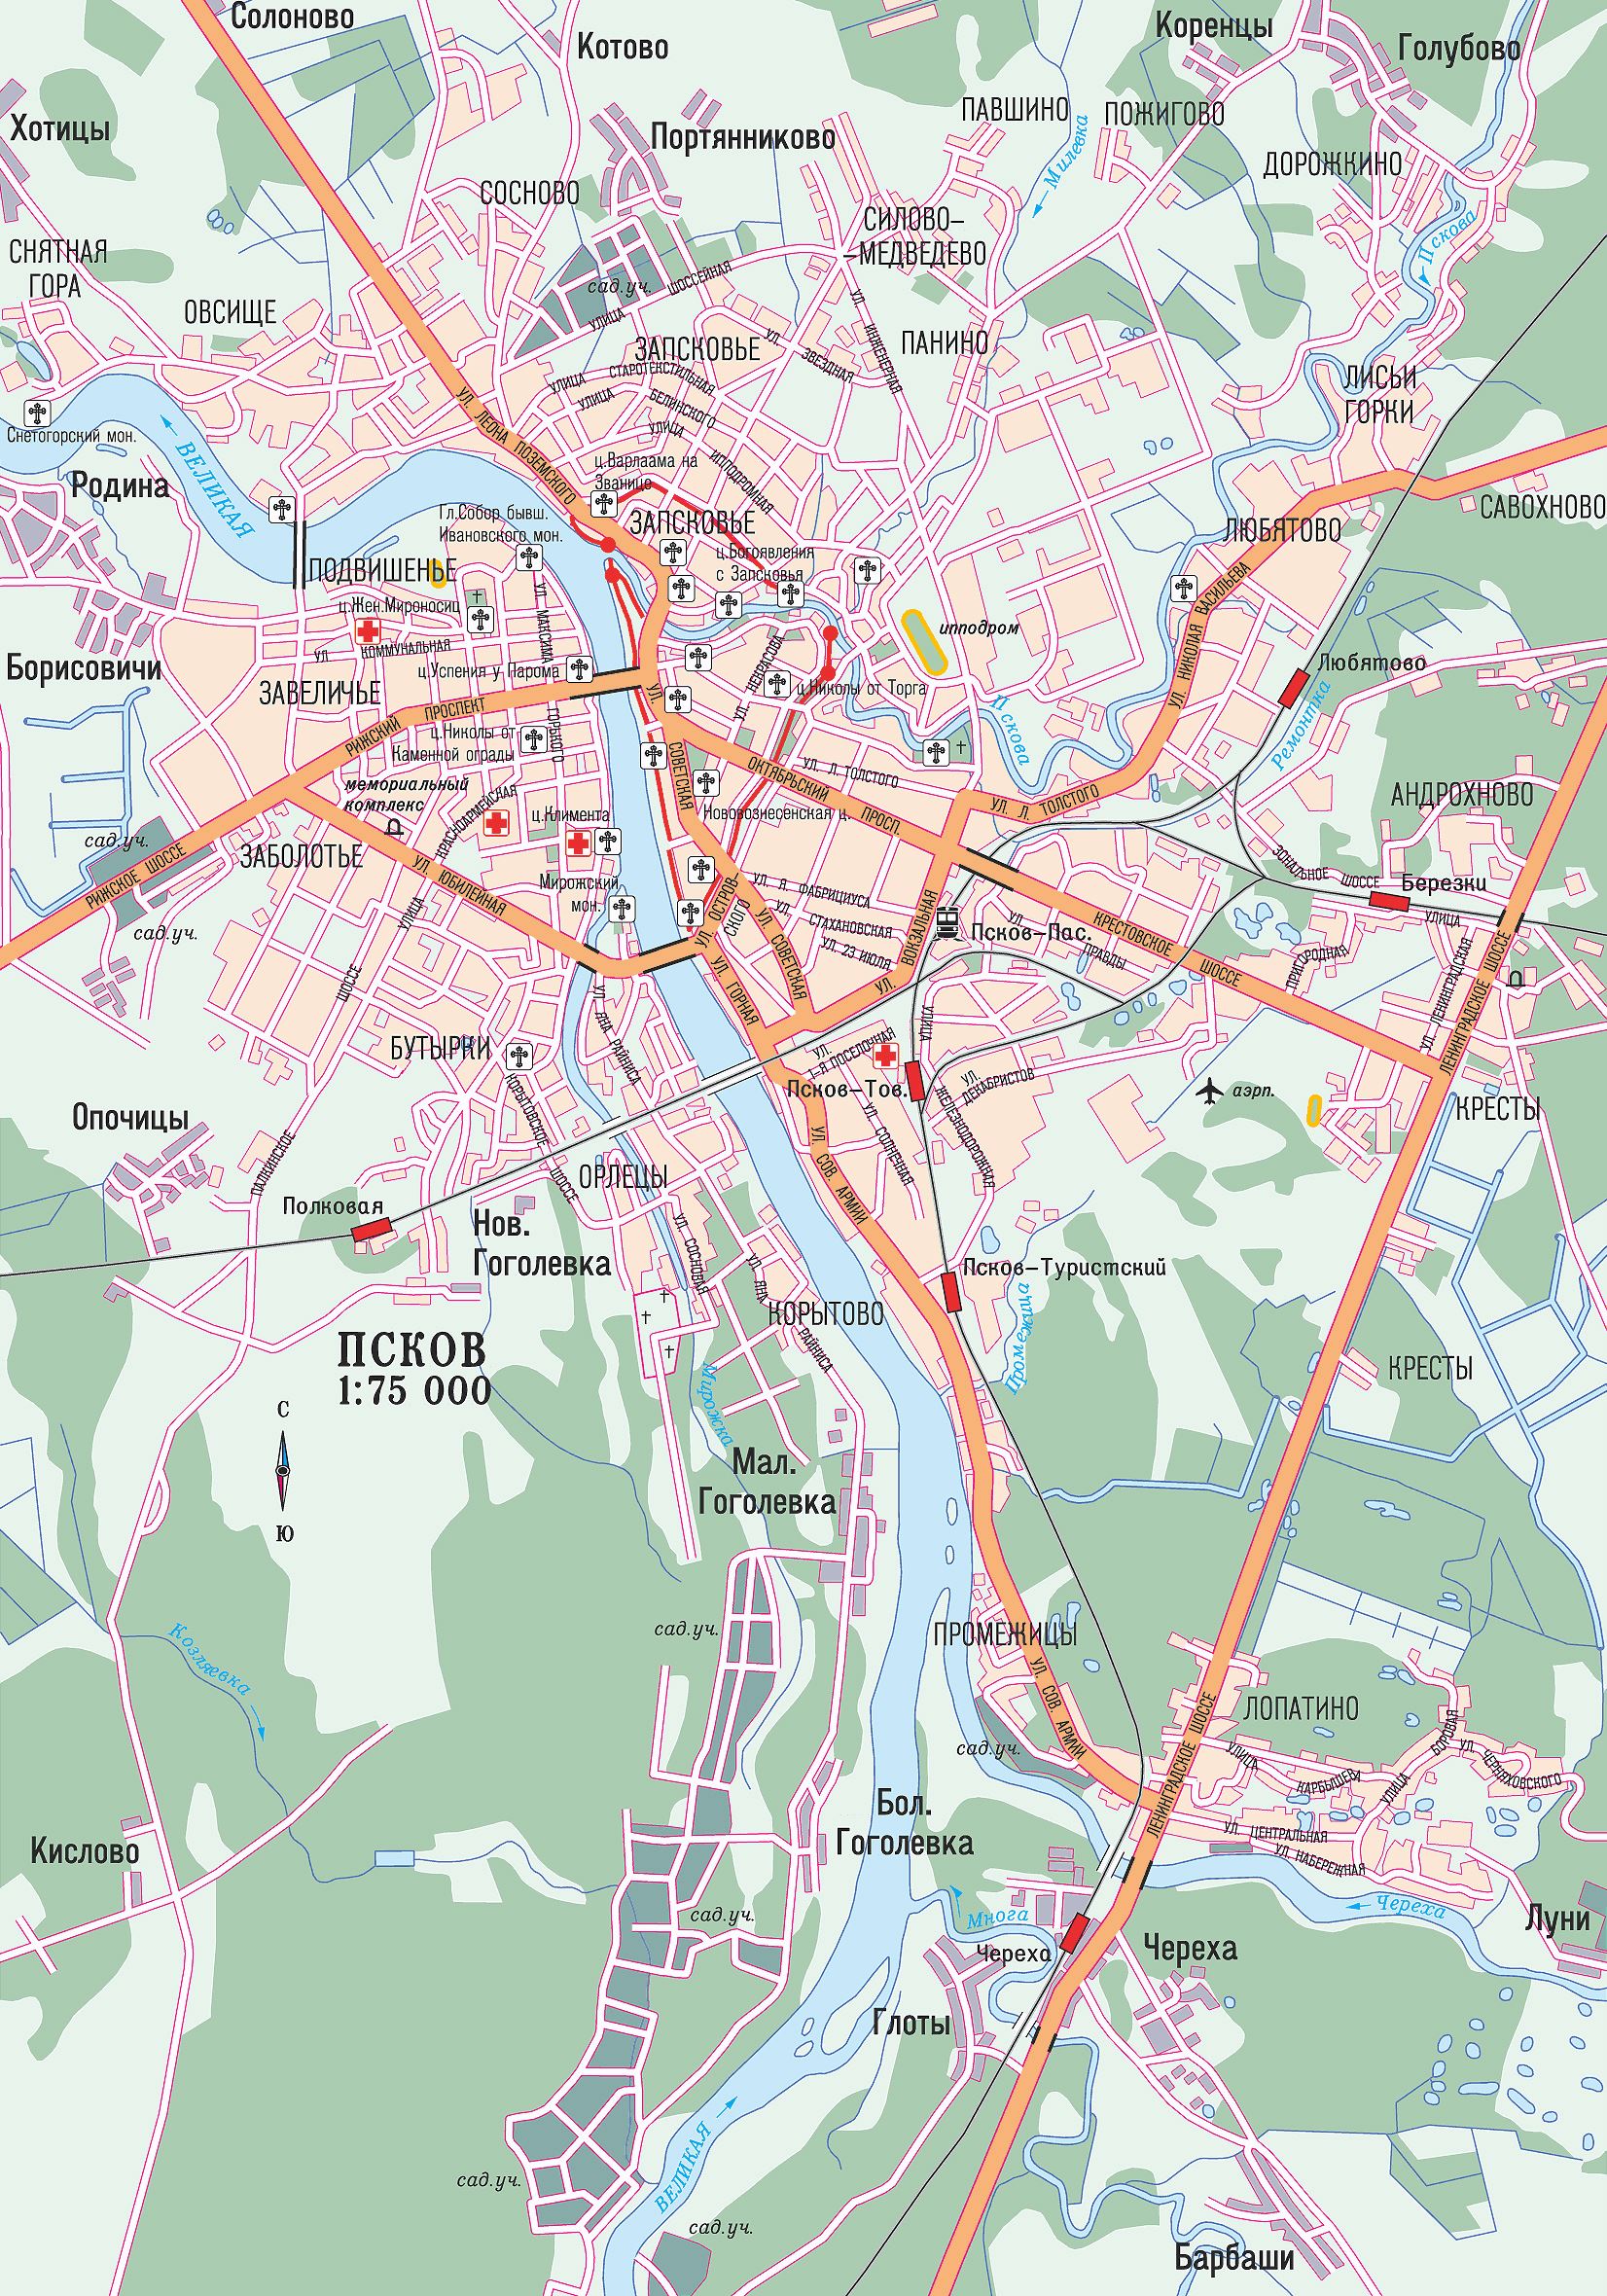 Карта котово с улицами и номерами домов